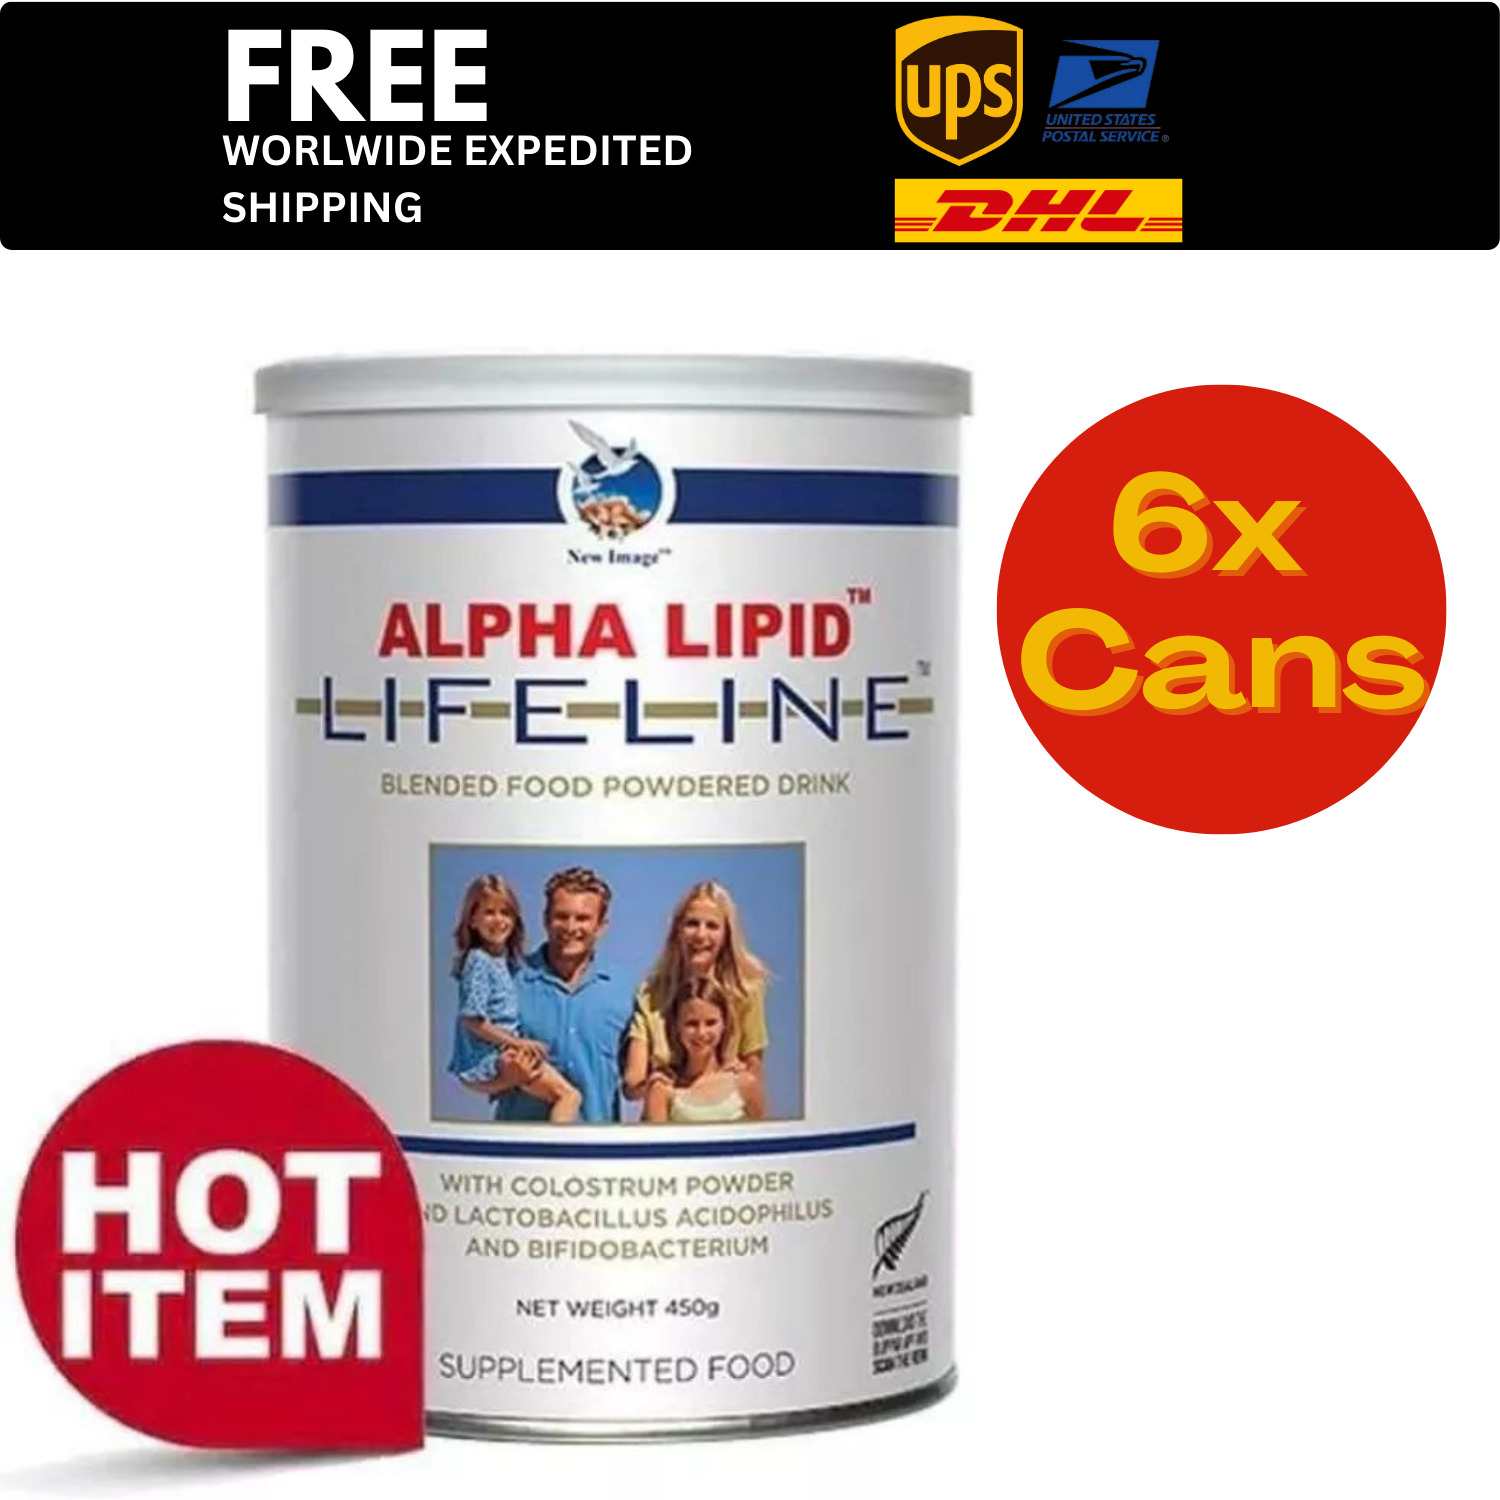 6 Cans Lifeline Lipid Alpha Colostrum Powder Milk Blended 450g Powdered Drink